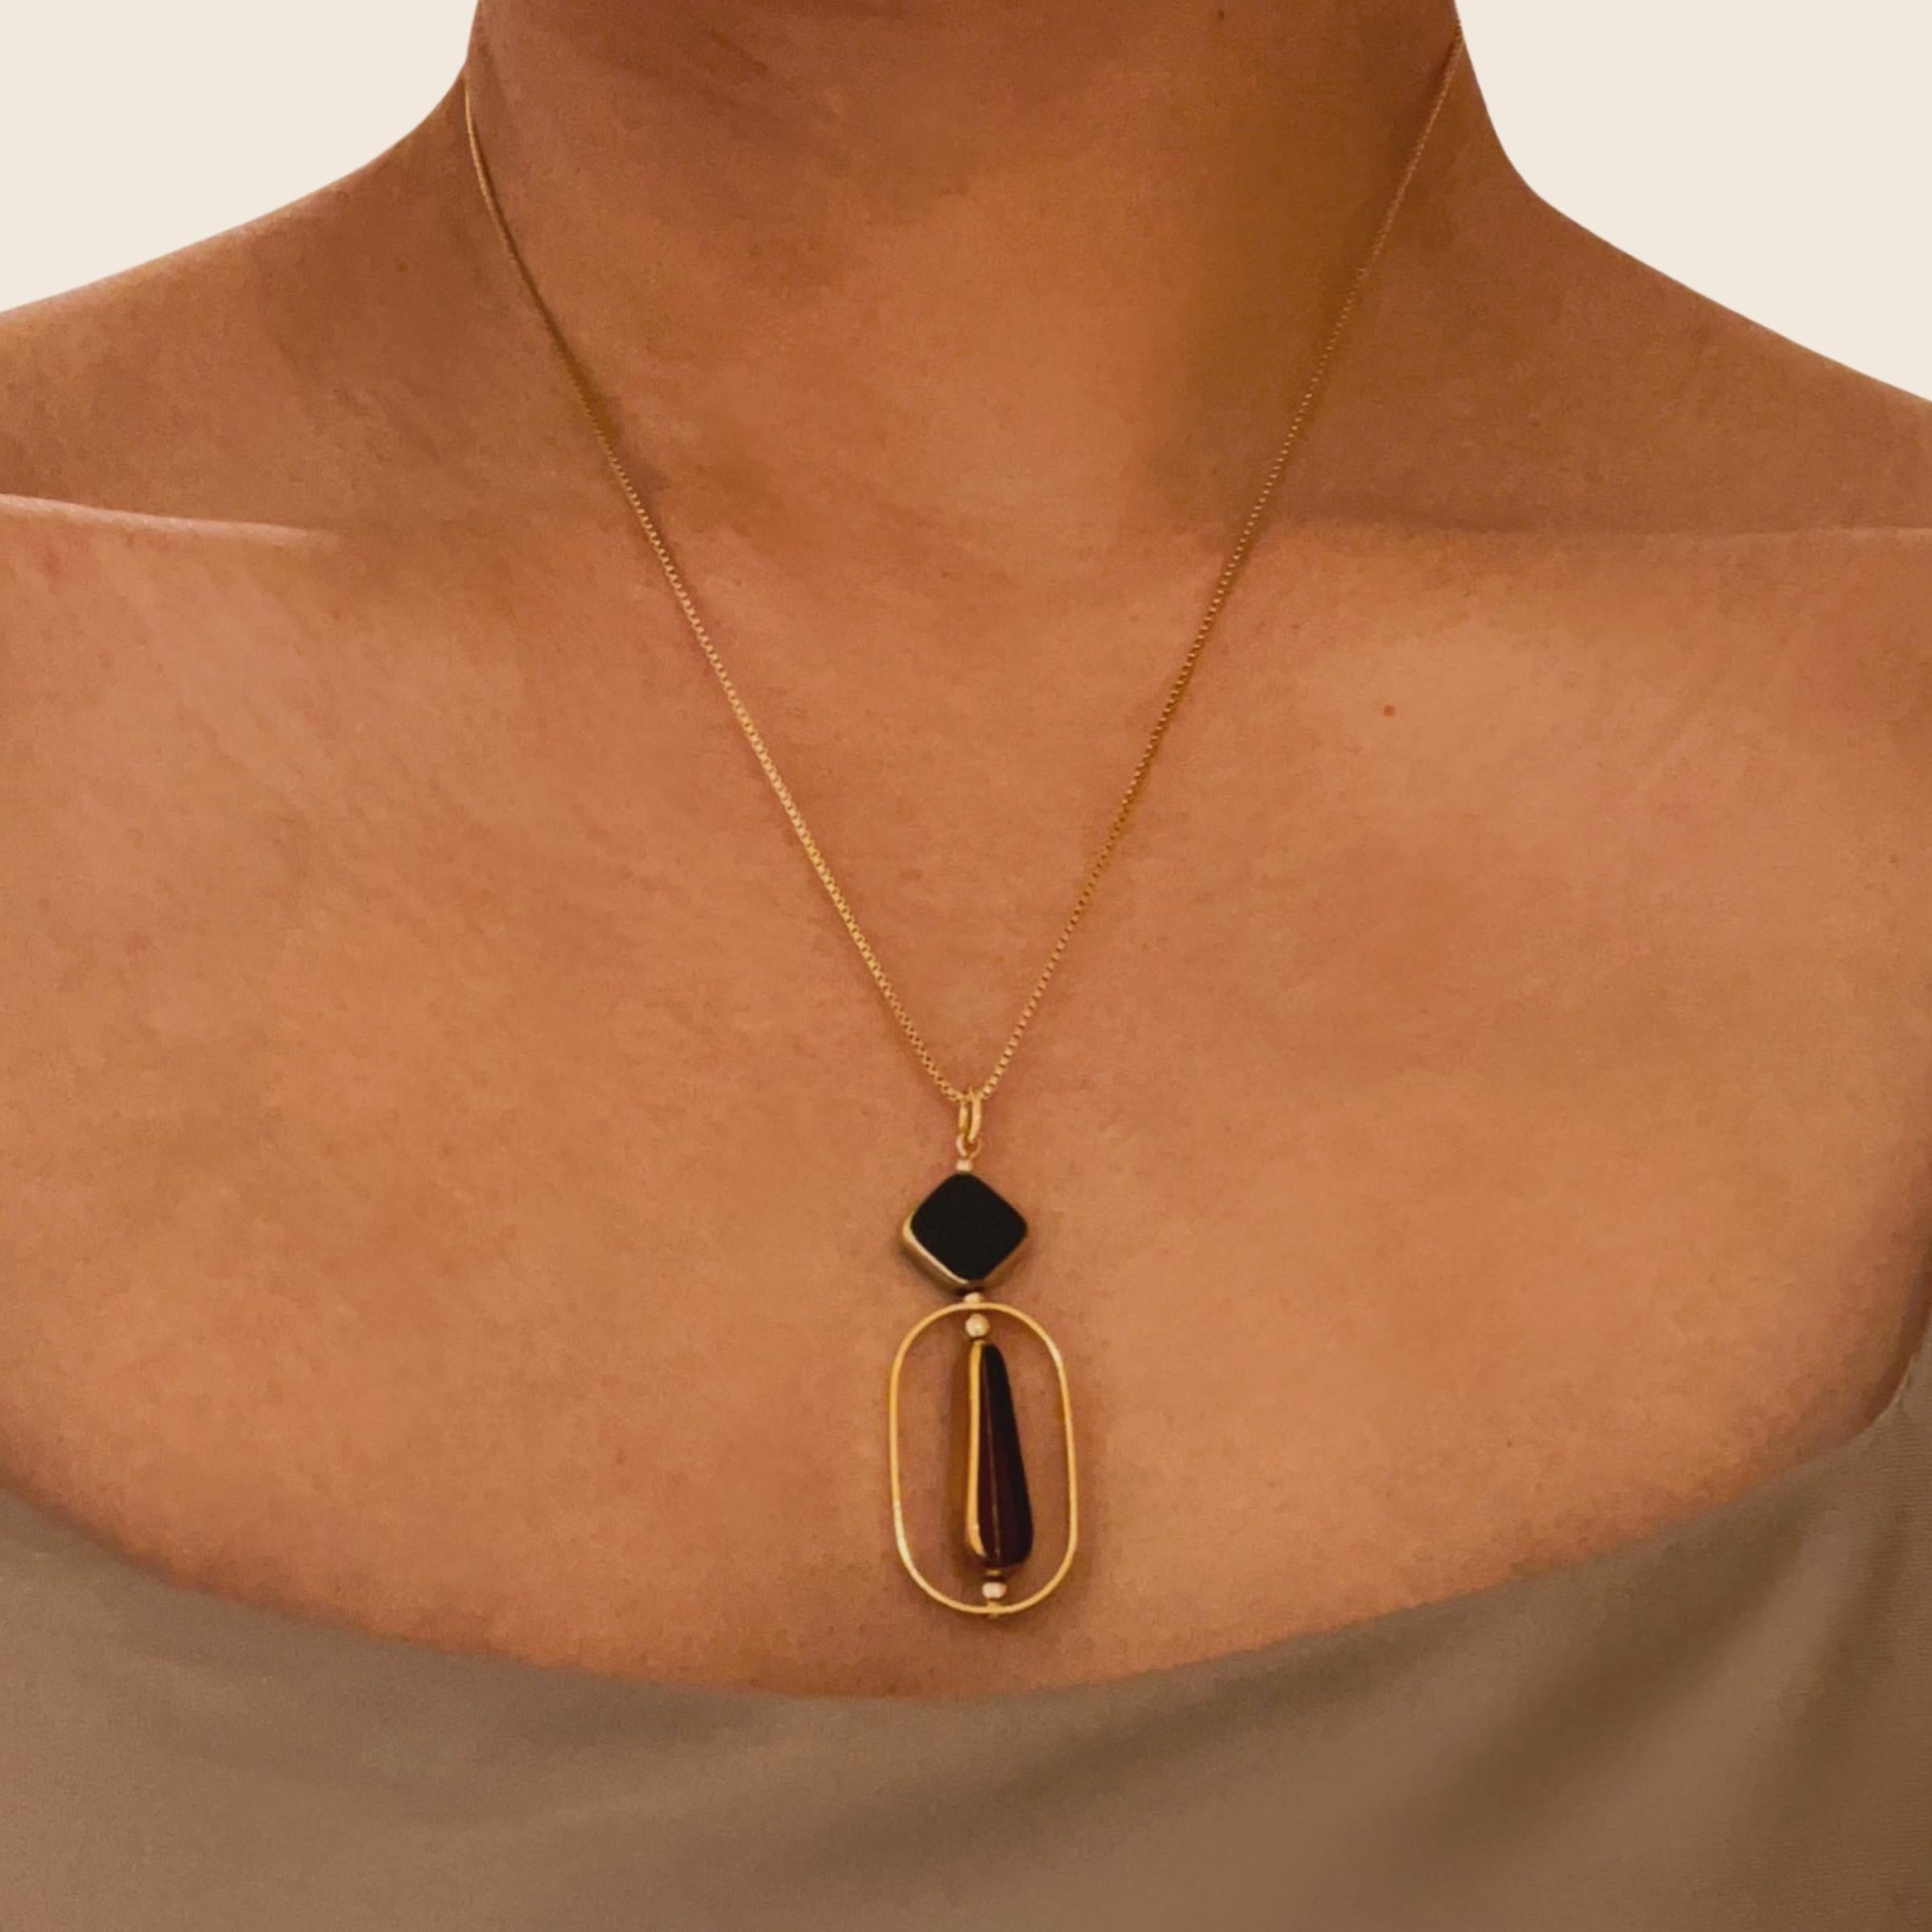 Le pendentif est composé de perles noires en forme de diamant et de perles bordeaux en verre allemand vintage en forme de goutte d'eau. Il est terminé par une chaîne de 18 pouces en or.

Les perles sont de nouvelles perles de verre allemandes